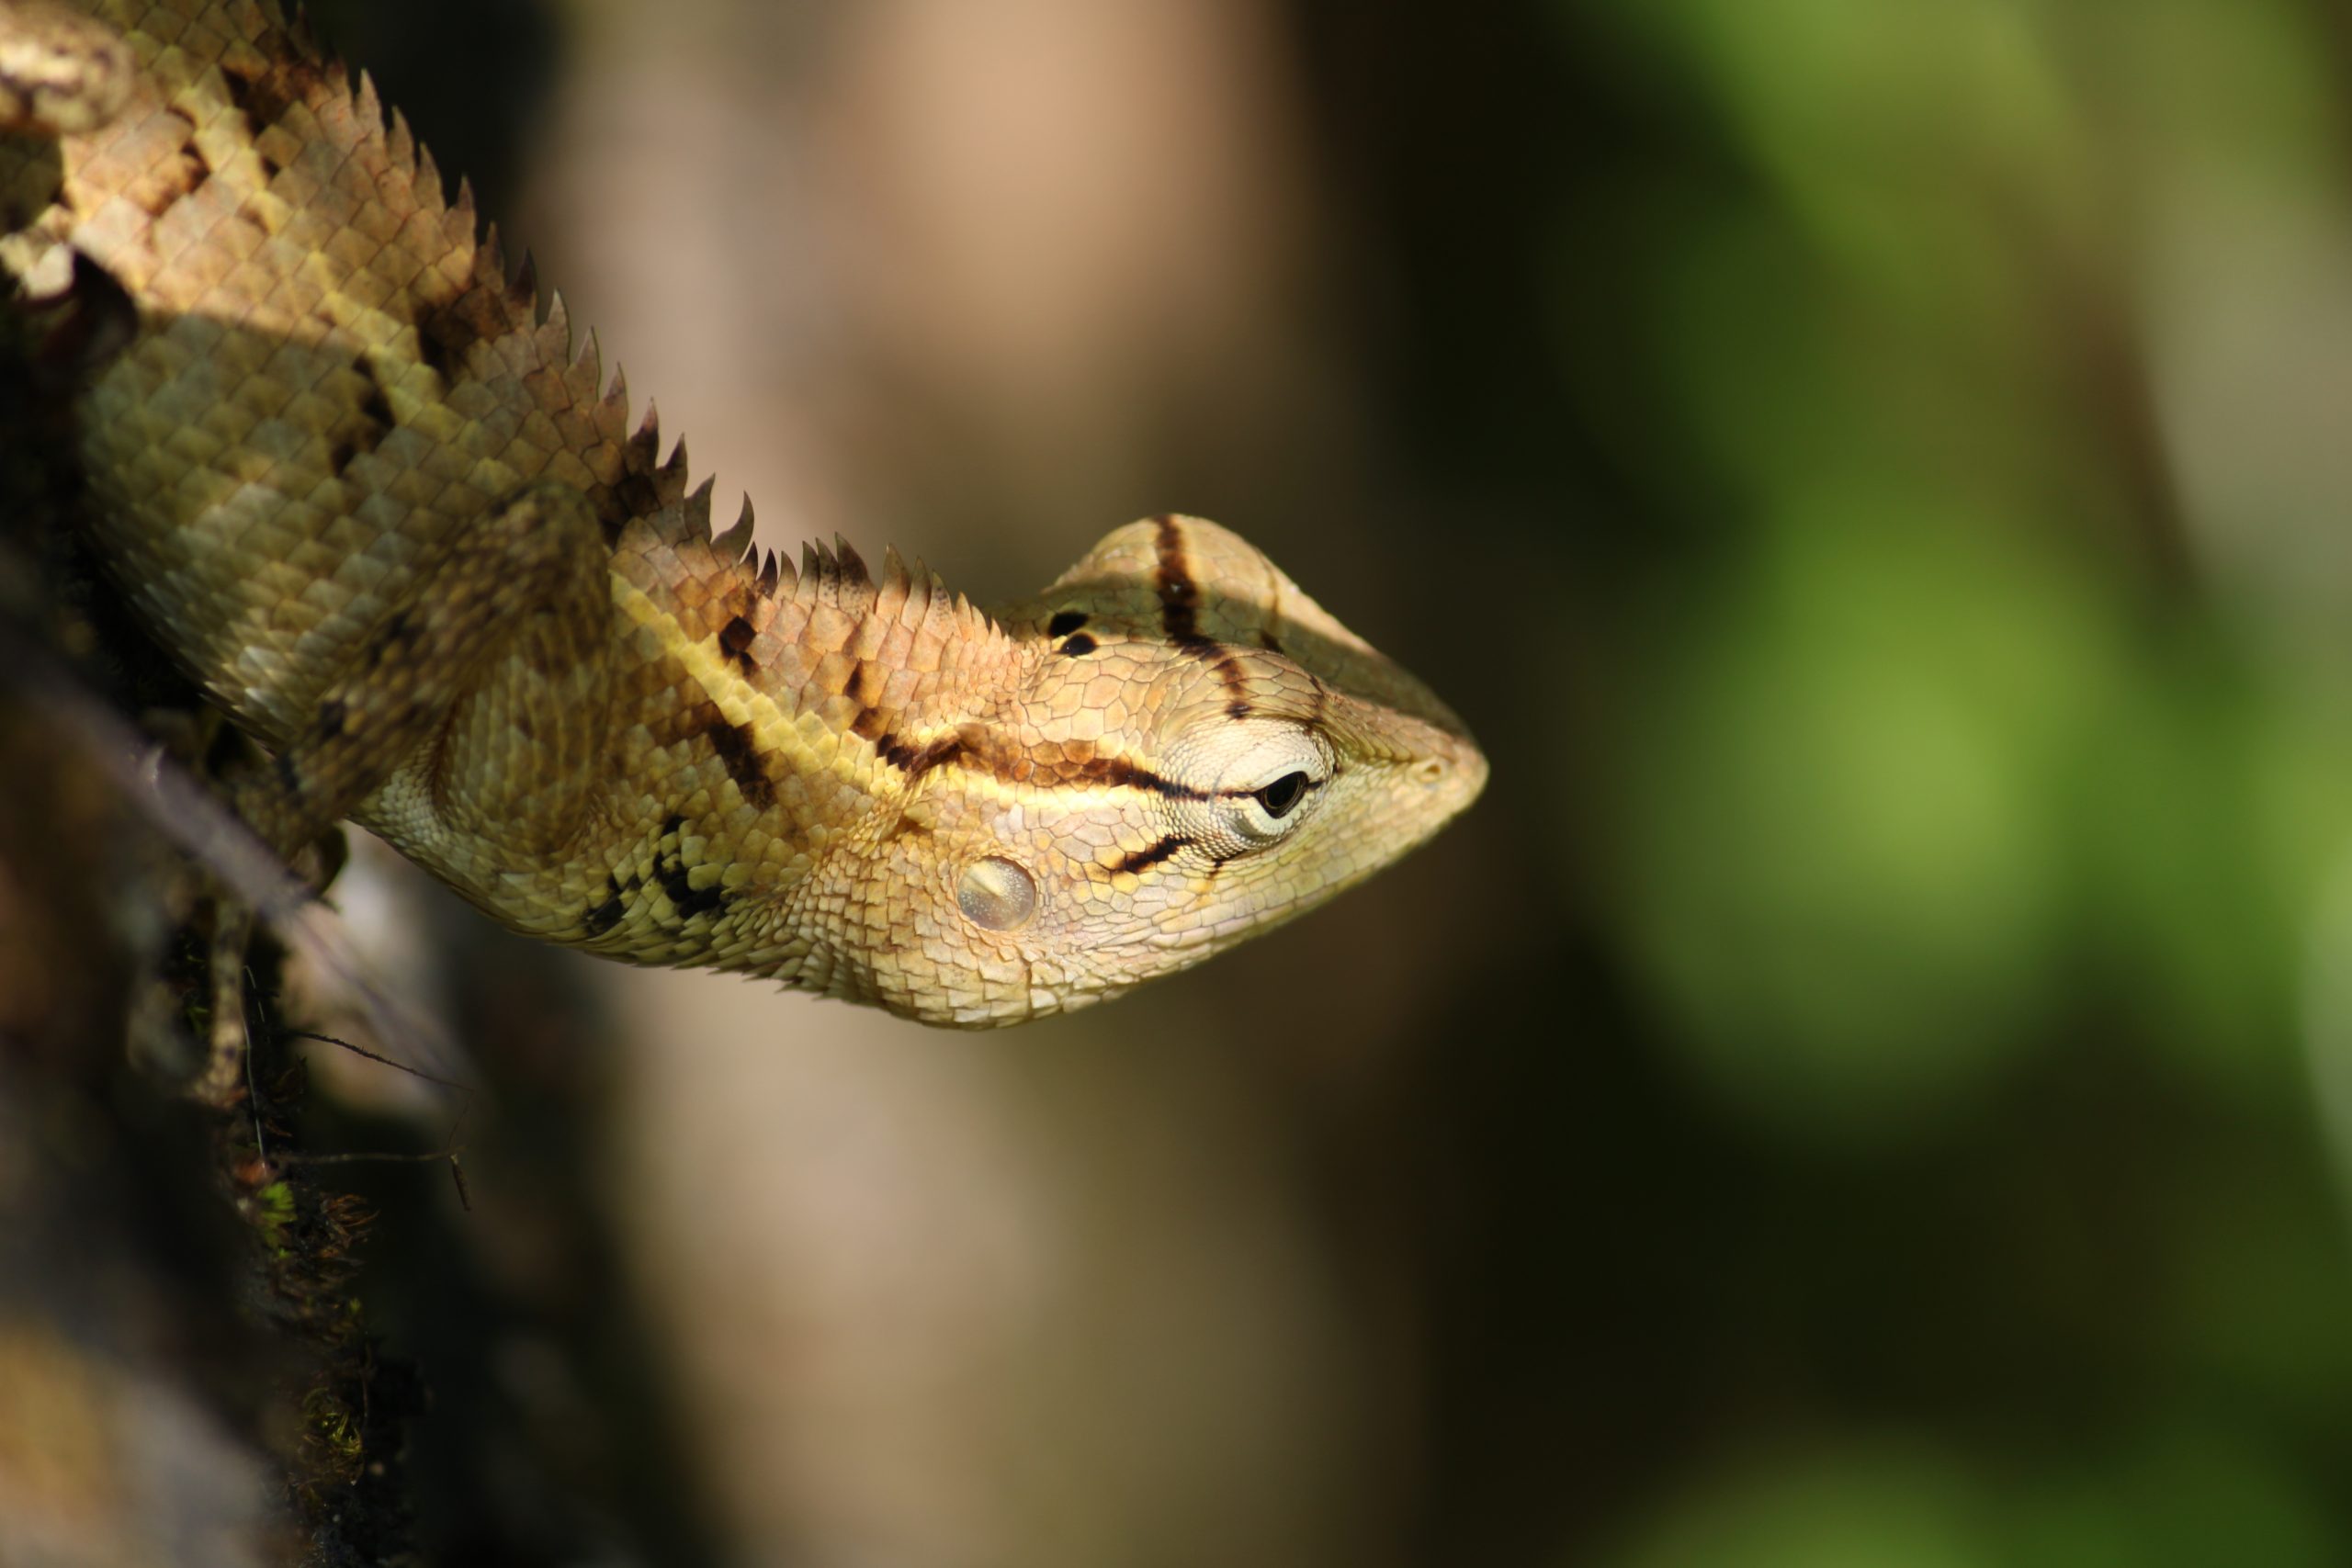 chameleon close up